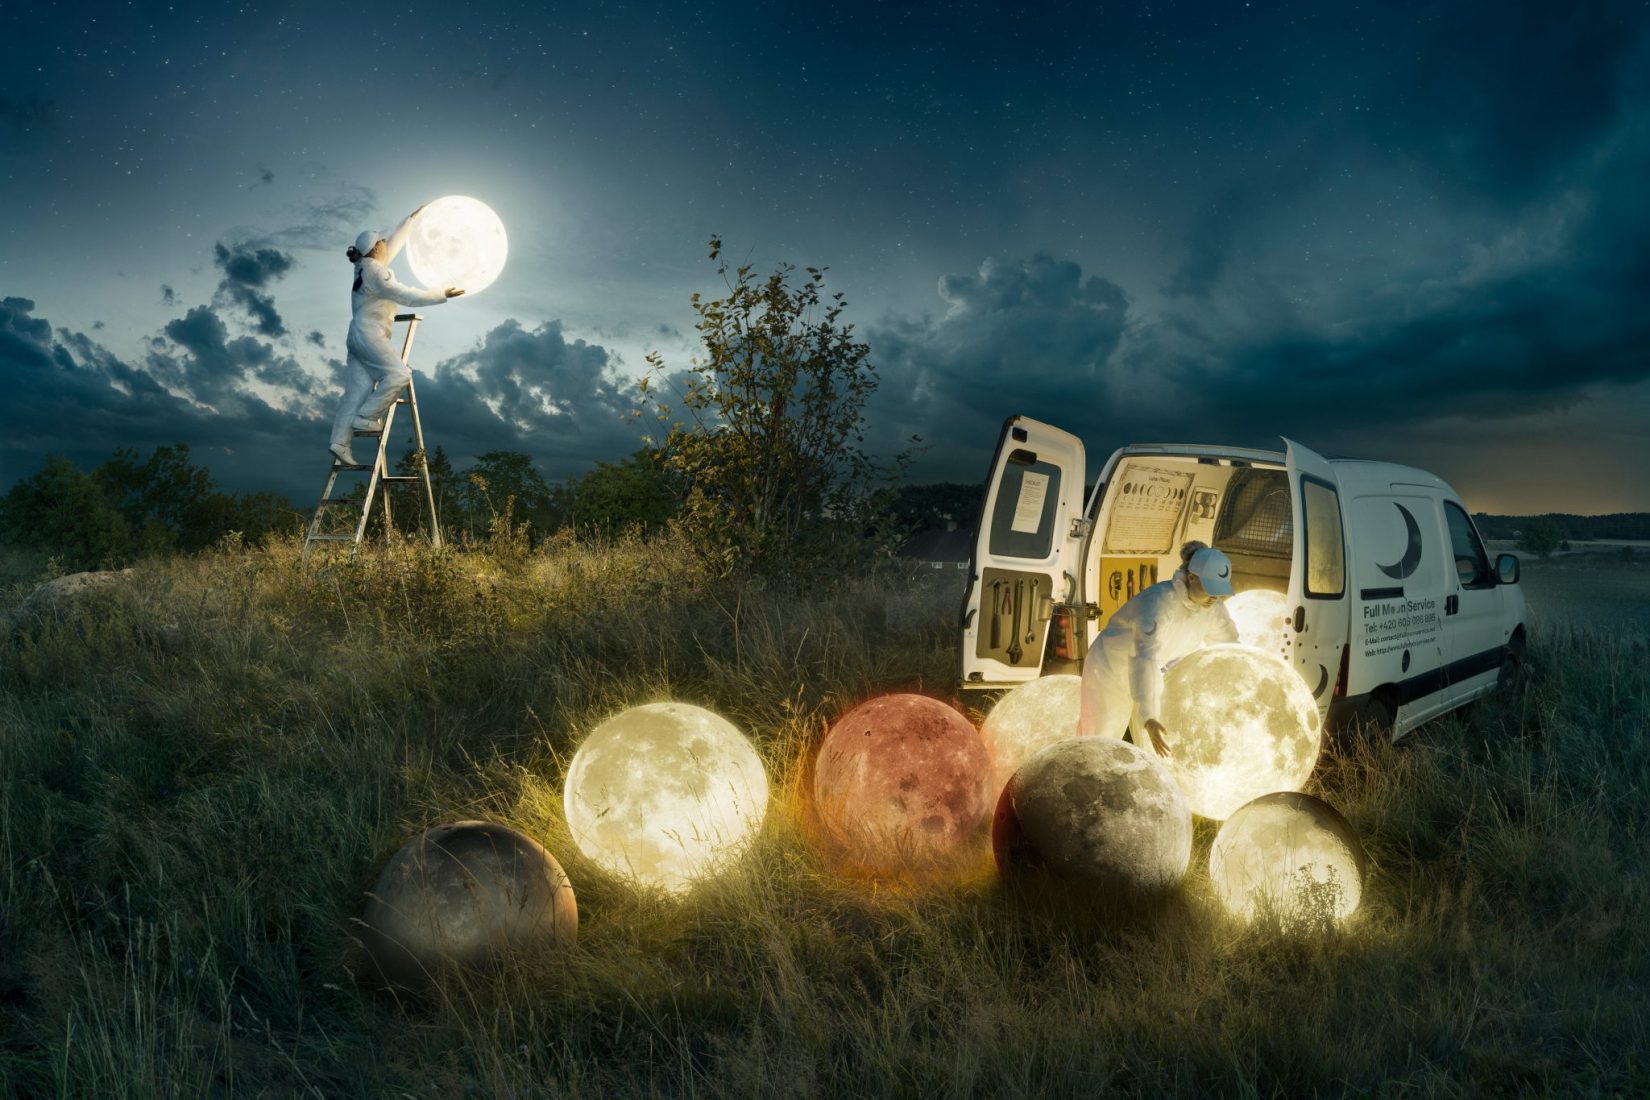 Verk med titeln: Full moon service. En man står på en stege och håller upp en rund lampa mot en natthimmel. På ängen framför honom ligger flera andra lysande lampklot. Som nedfallna månar.